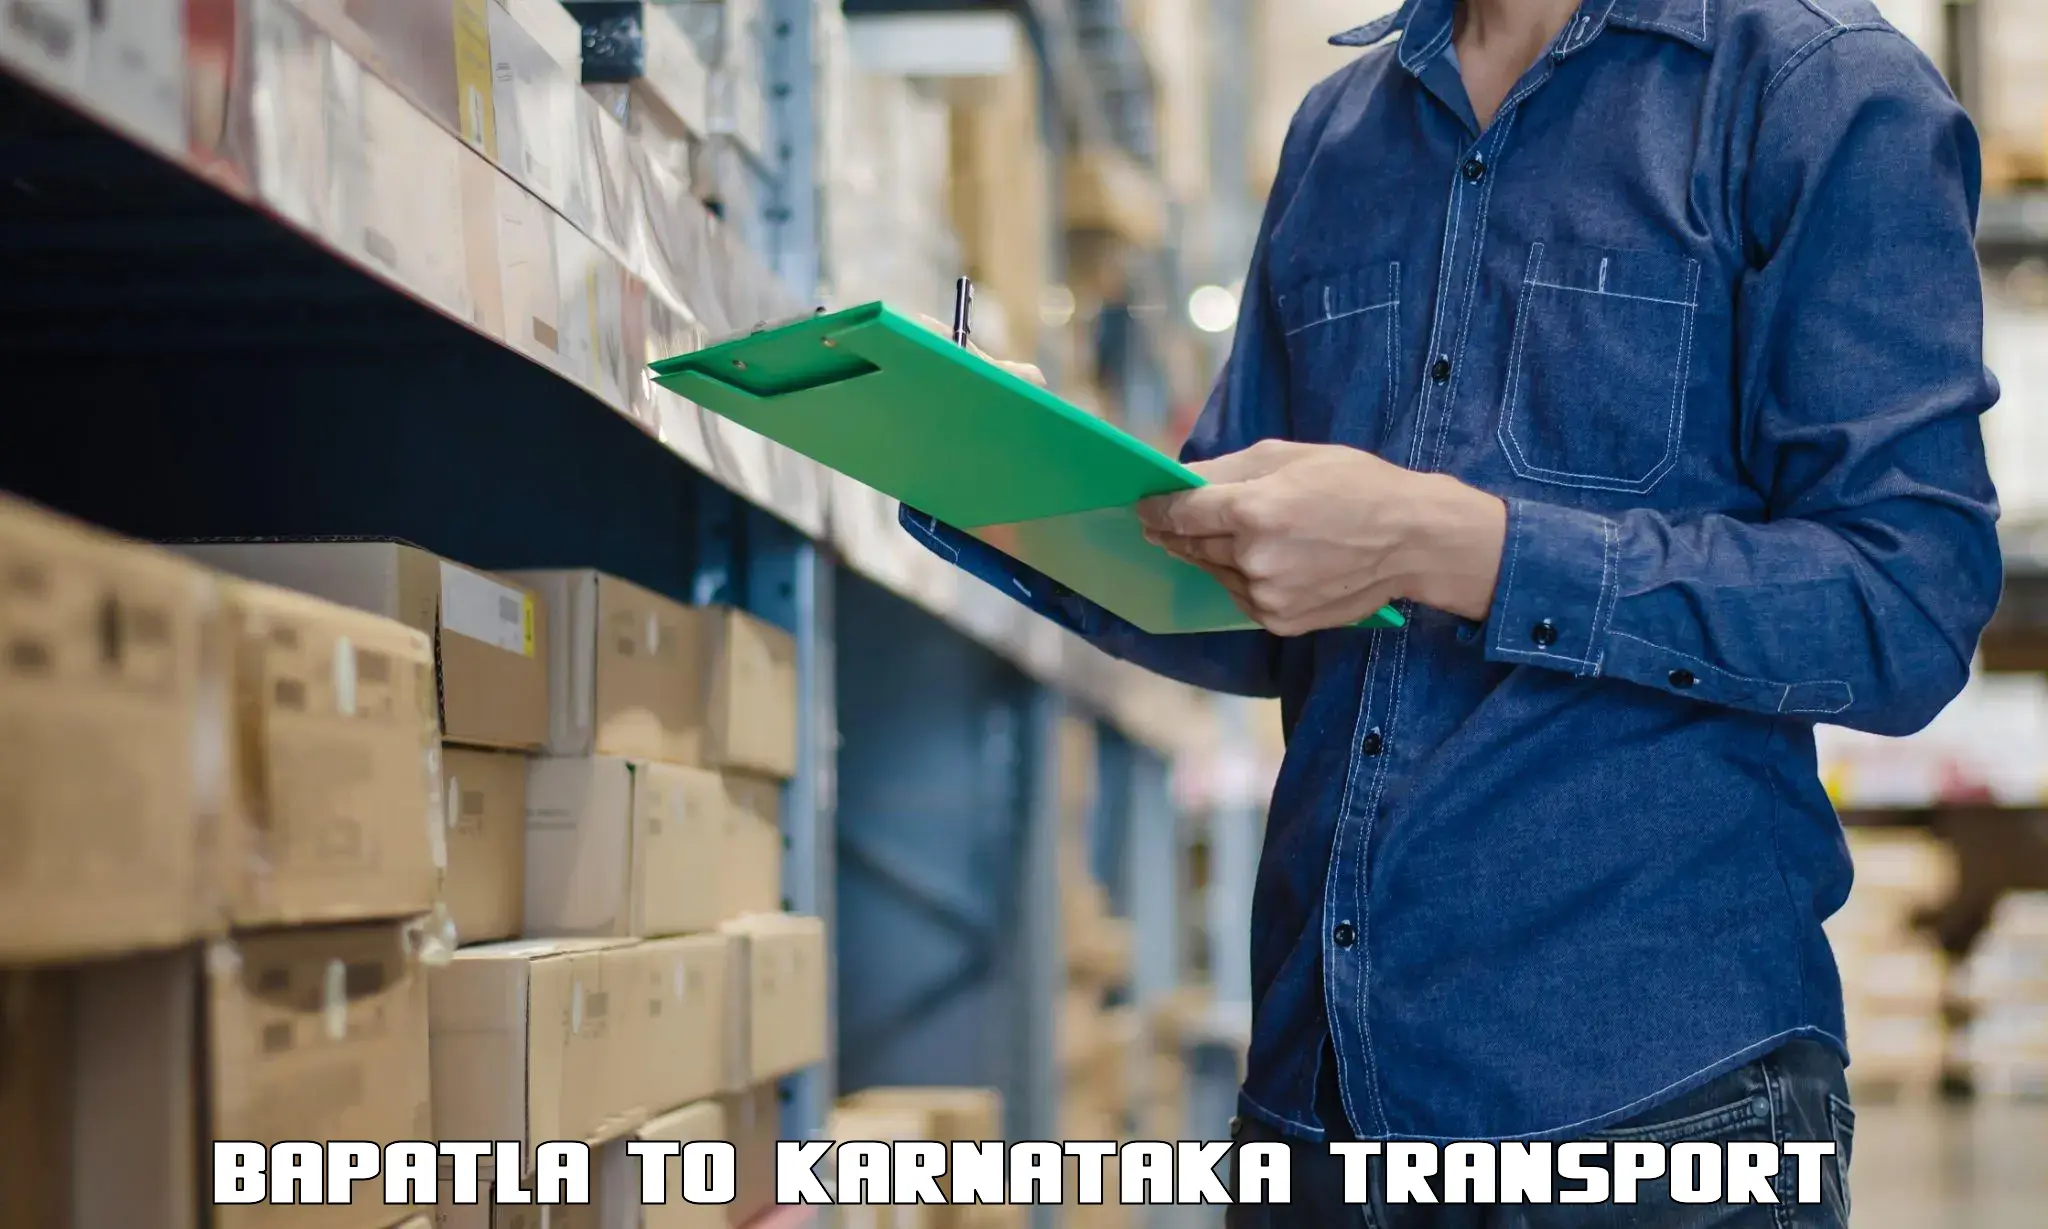 Goods delivery service in Bapatla to Karnataka